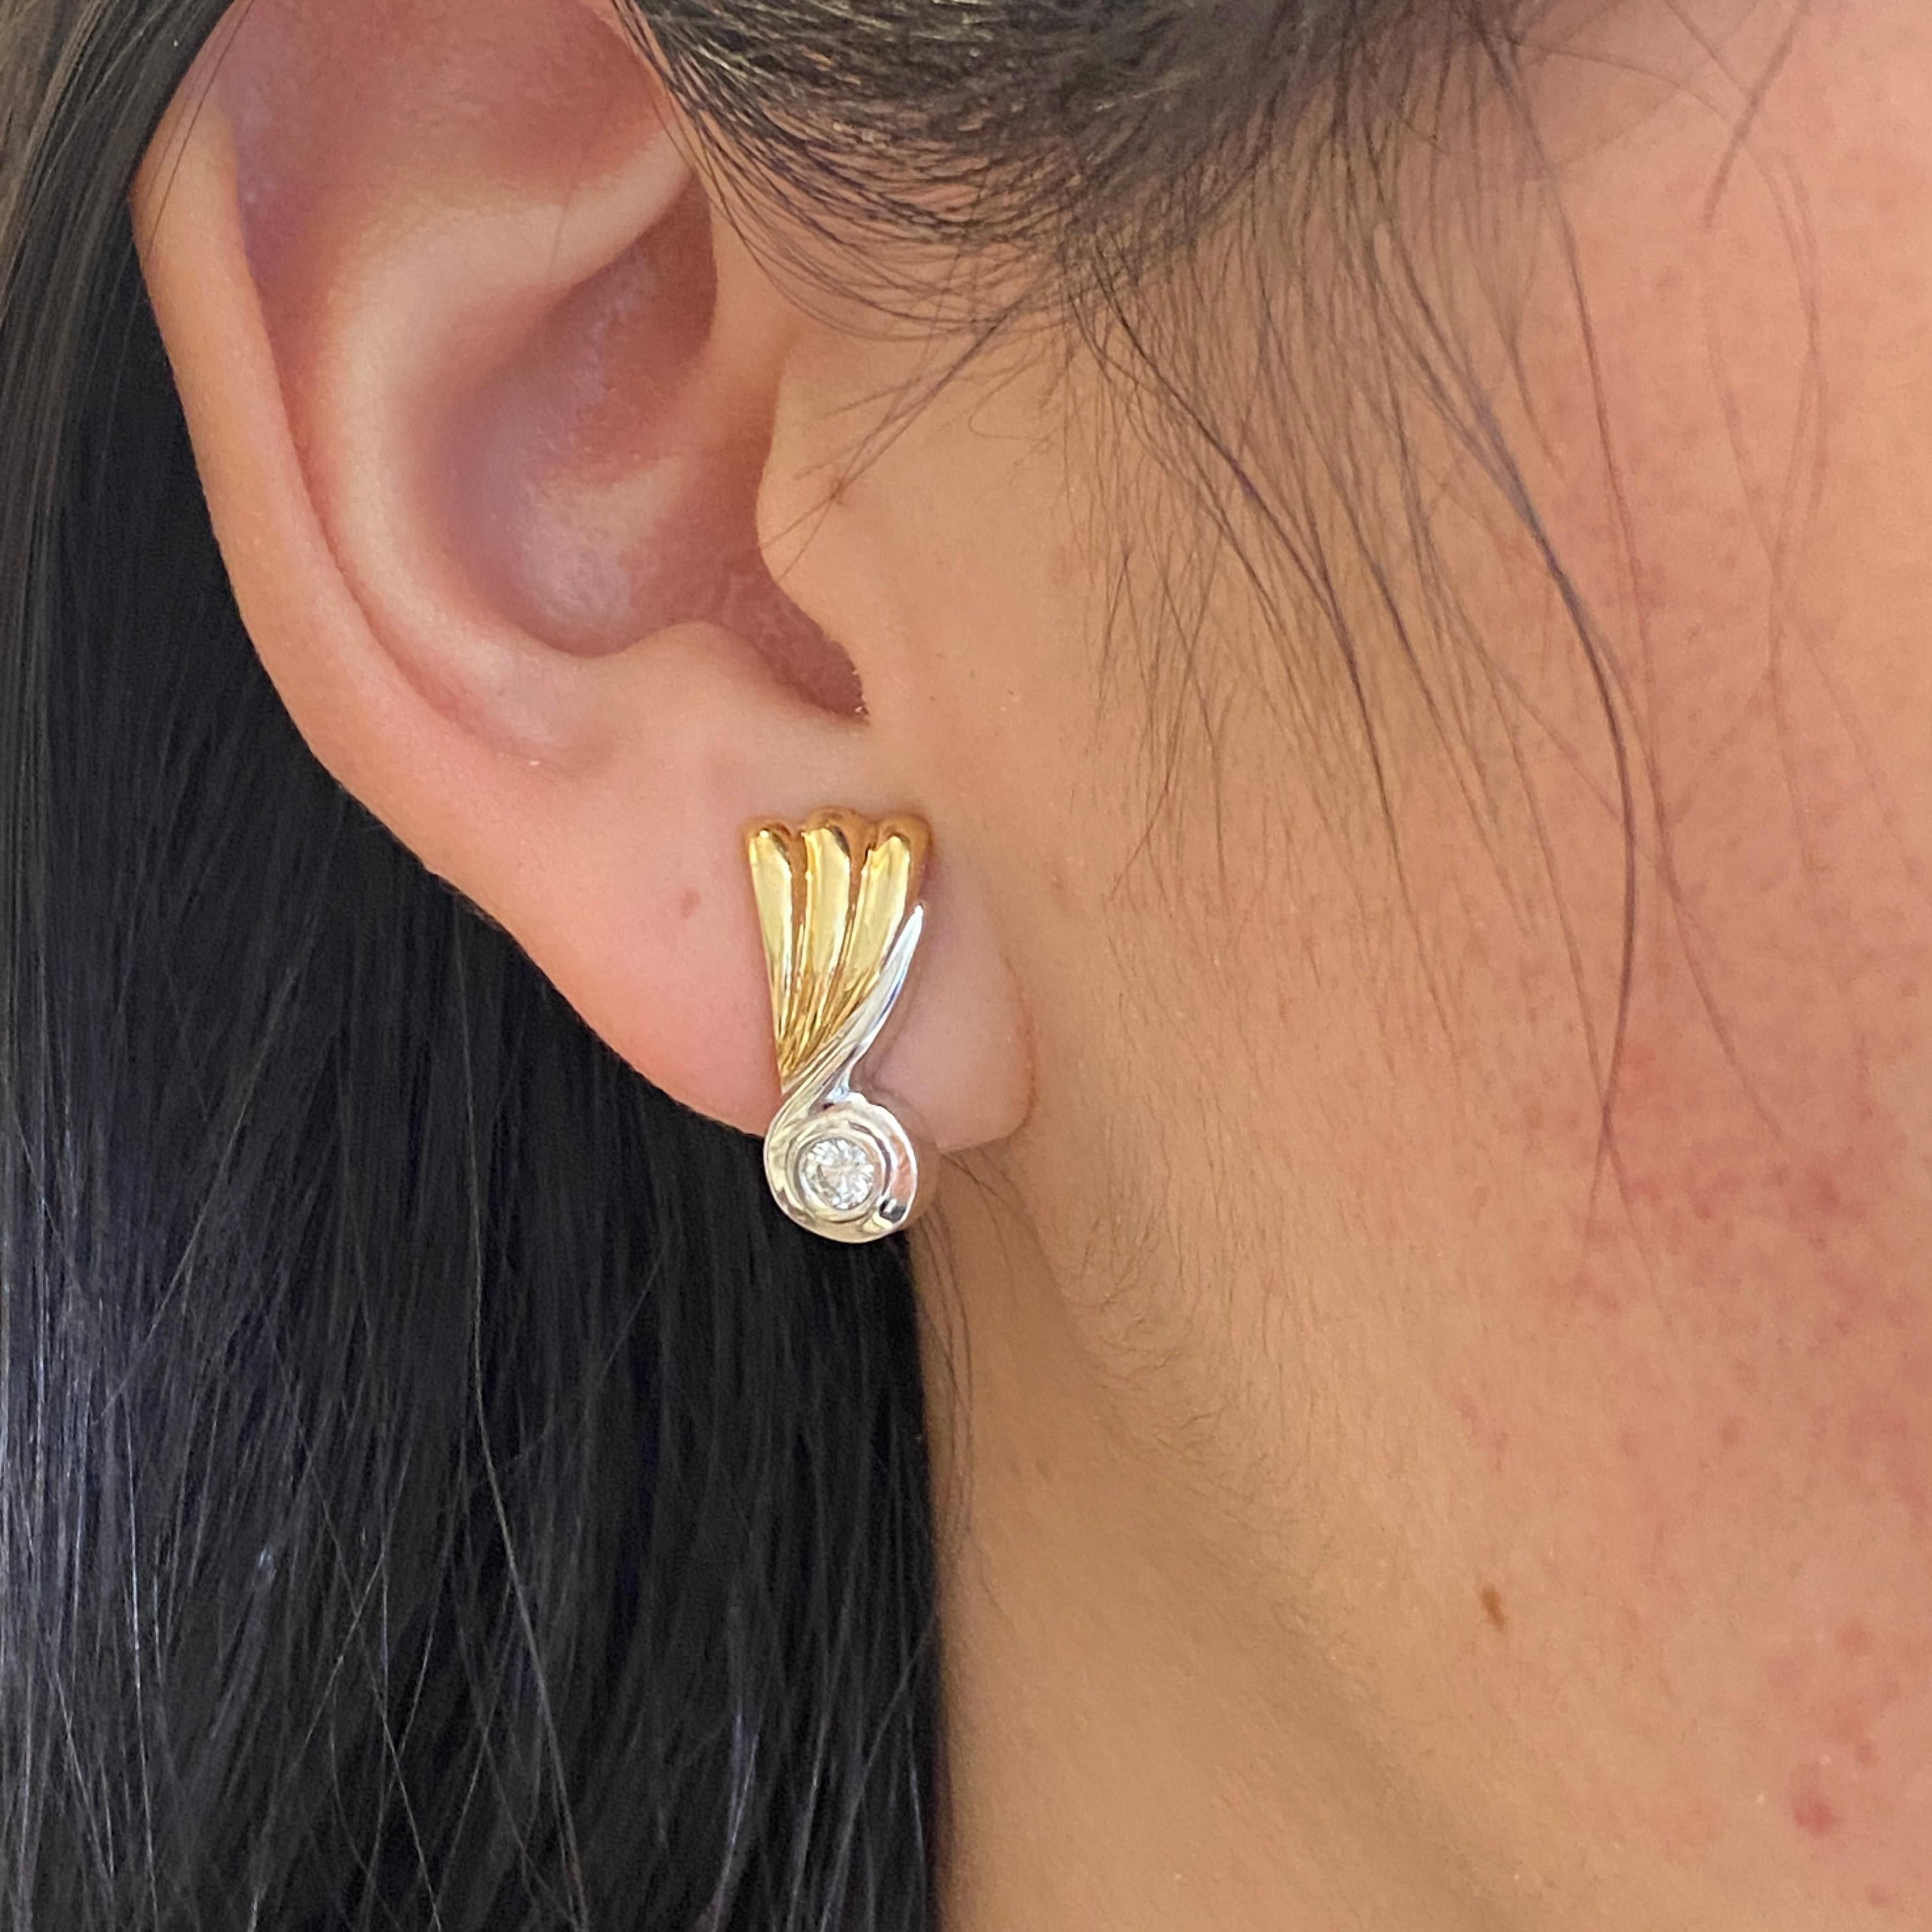 Ajoutez une touche rétro à votre journée avec ces fabuleuses boucles d'oreilles en diamant bicolore ! Ces boucles d'oreilles sont ornées d'un triple éventail de nervures en or jaune. Elles sont adossées à une ligne évasée d'or blanc qui s'enroule